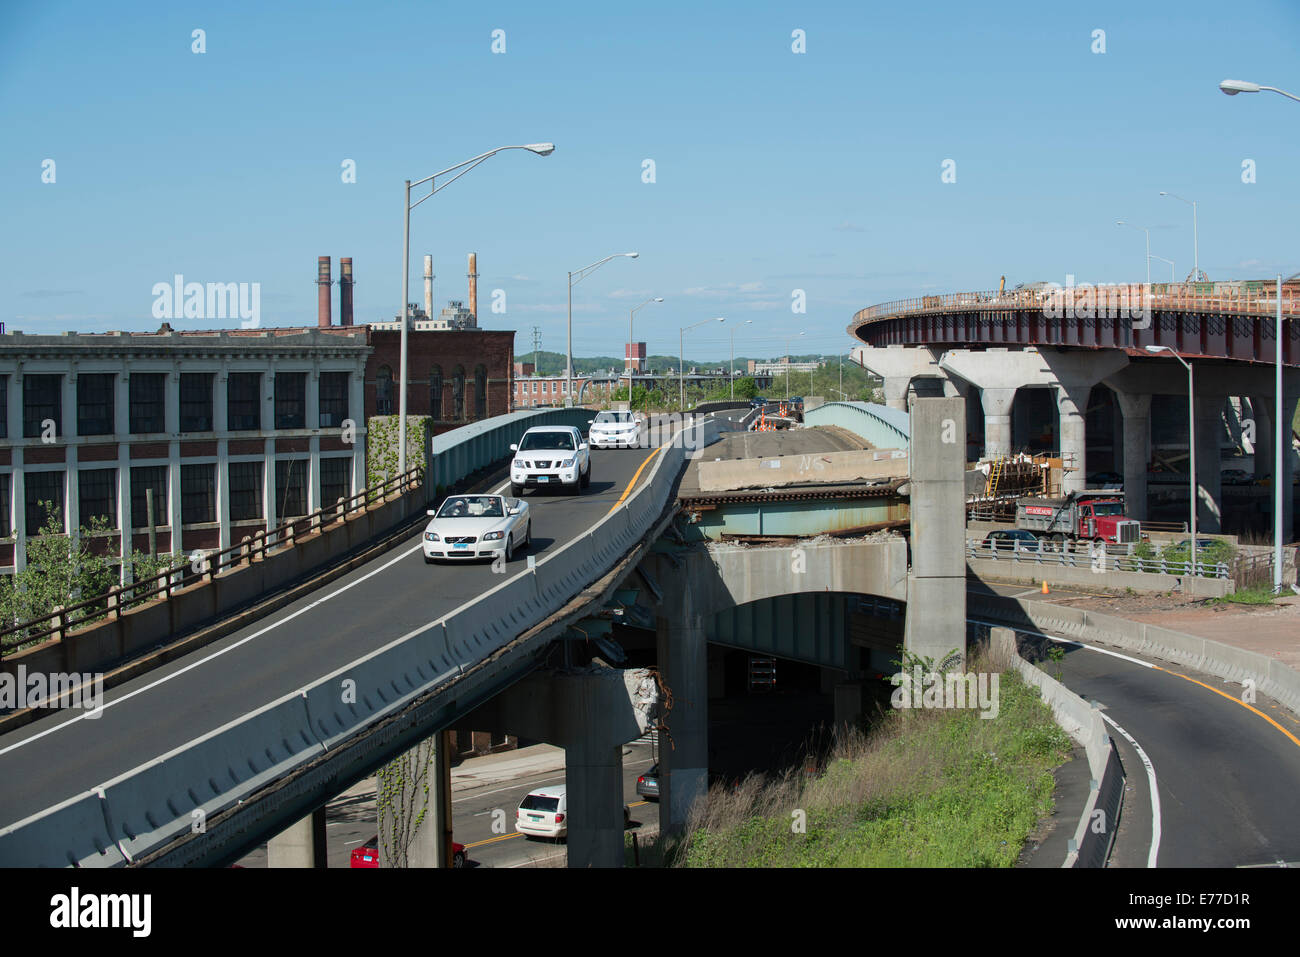 Alte Autobahn teilweise abgerissen, um Platz für neue Autobahn in New Haven Hafen Crossing Projekt zu machen. Stockfoto